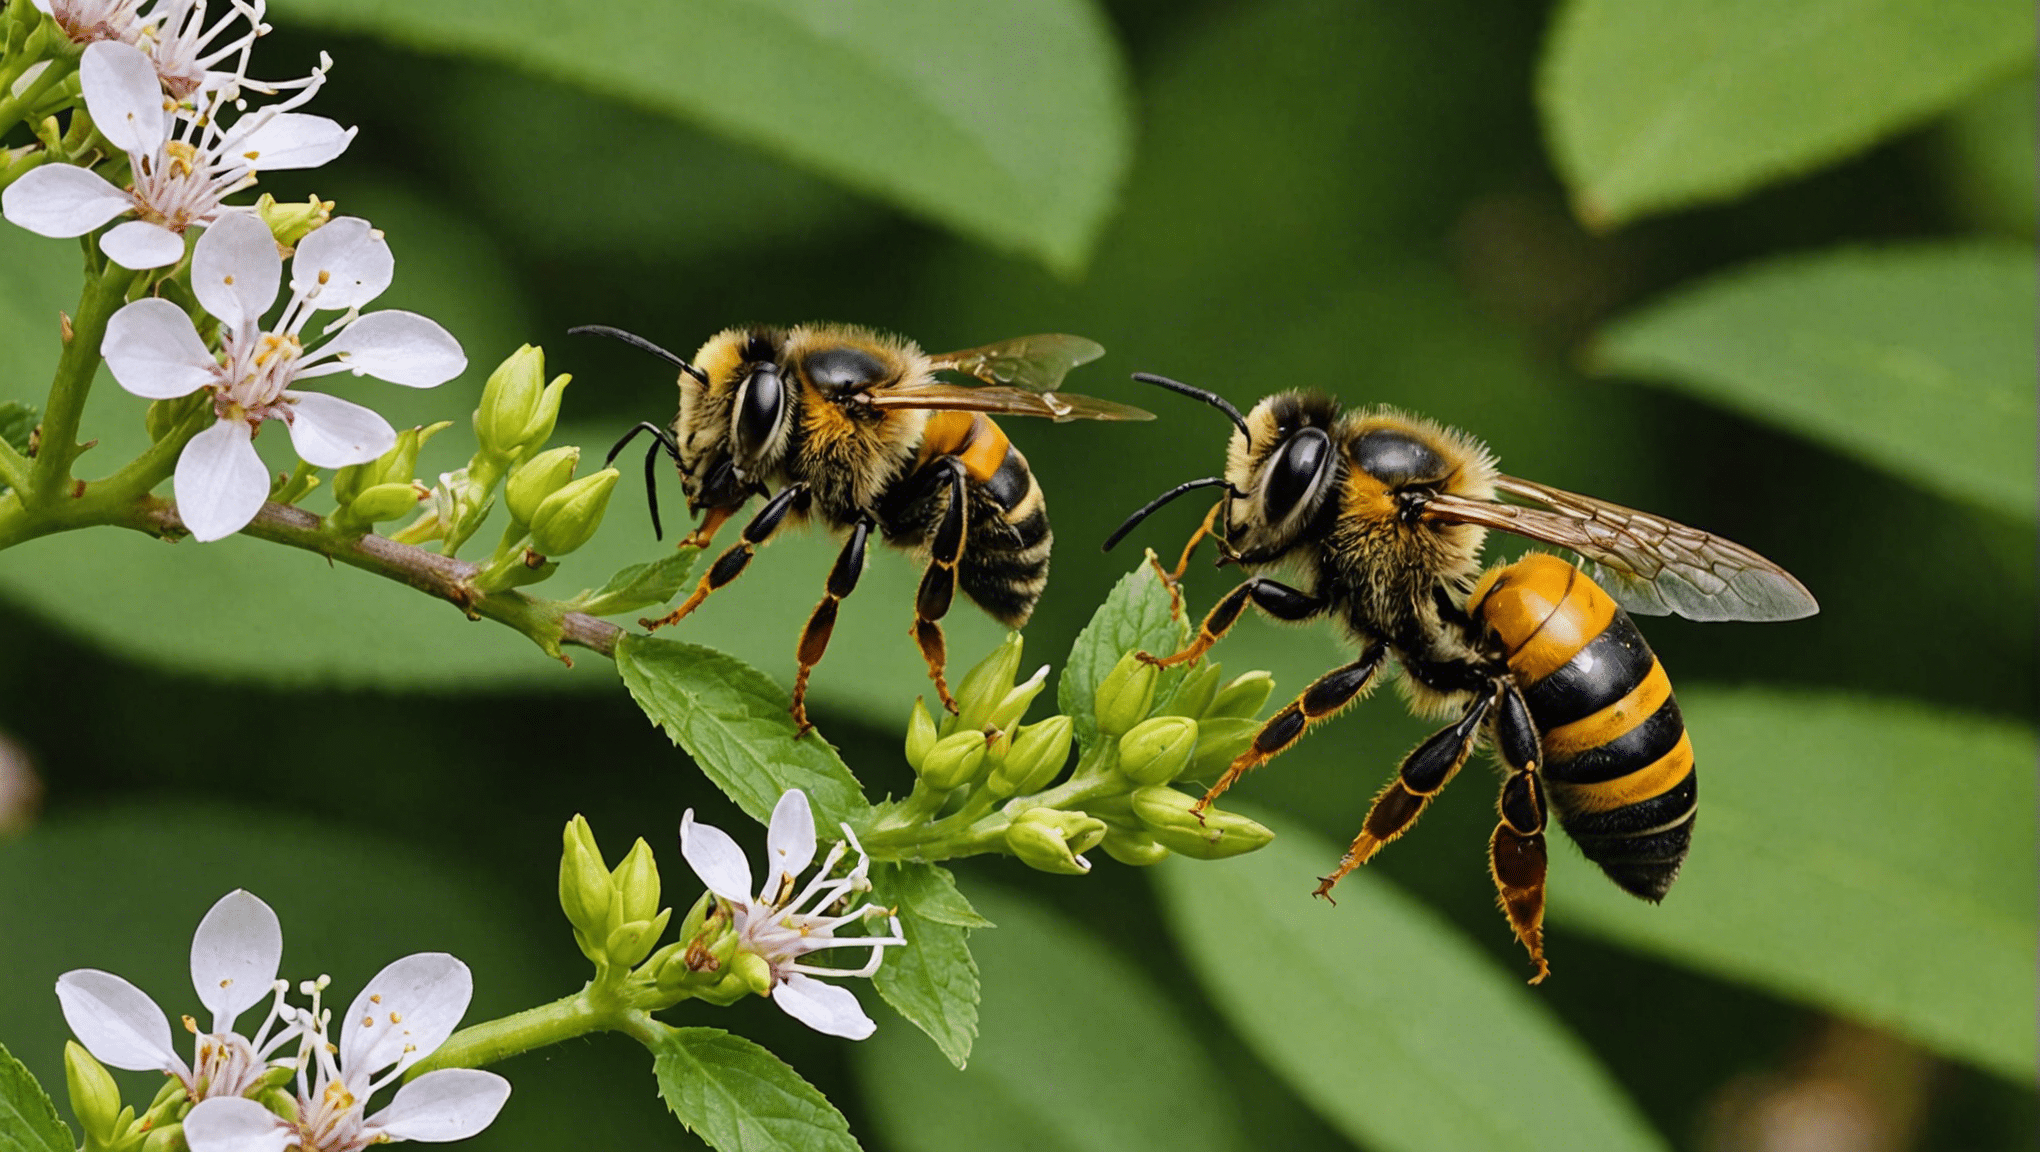 Descubra las distinciones entre abejas, avispas y avispones y aprenda sobre su apariencia, comportamiento y hábitat.